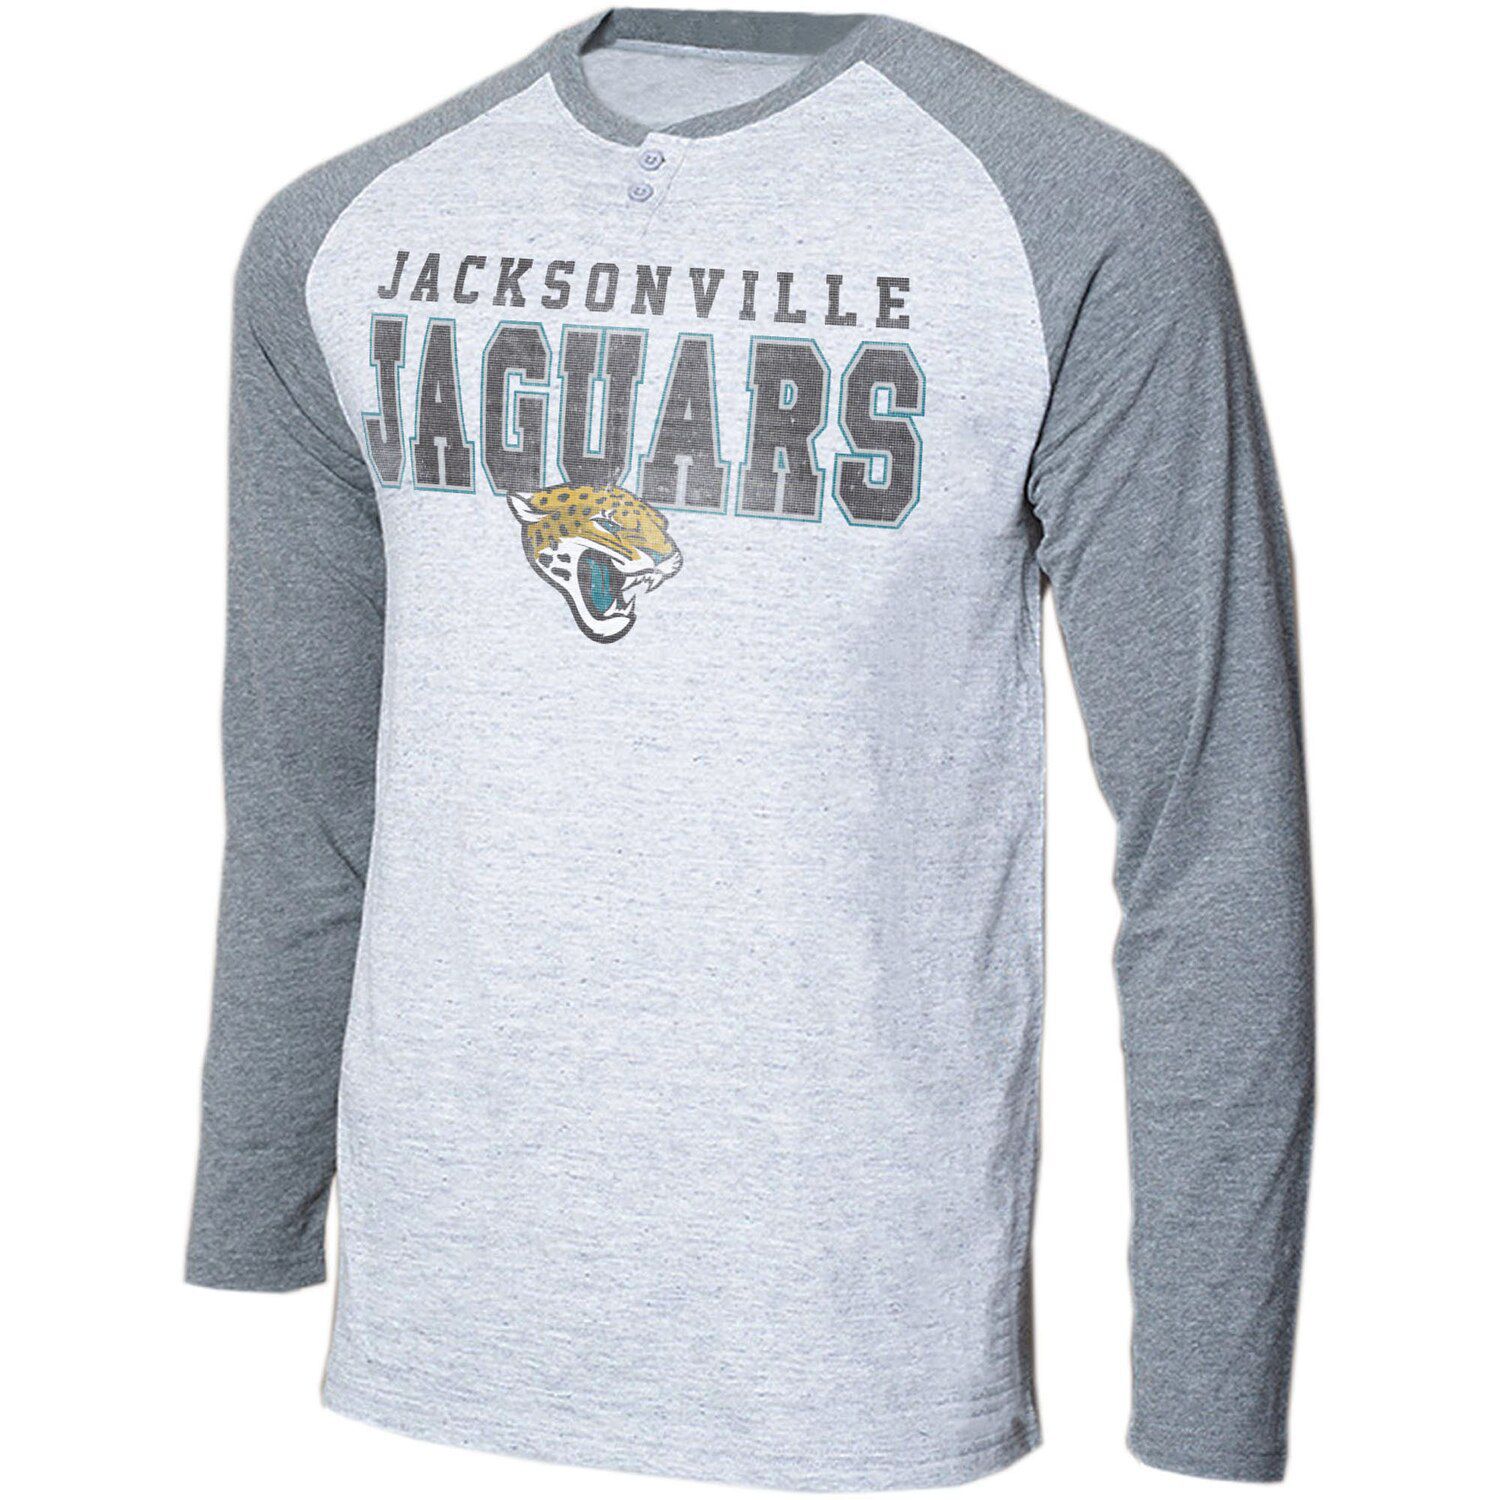 jacksonville shirt